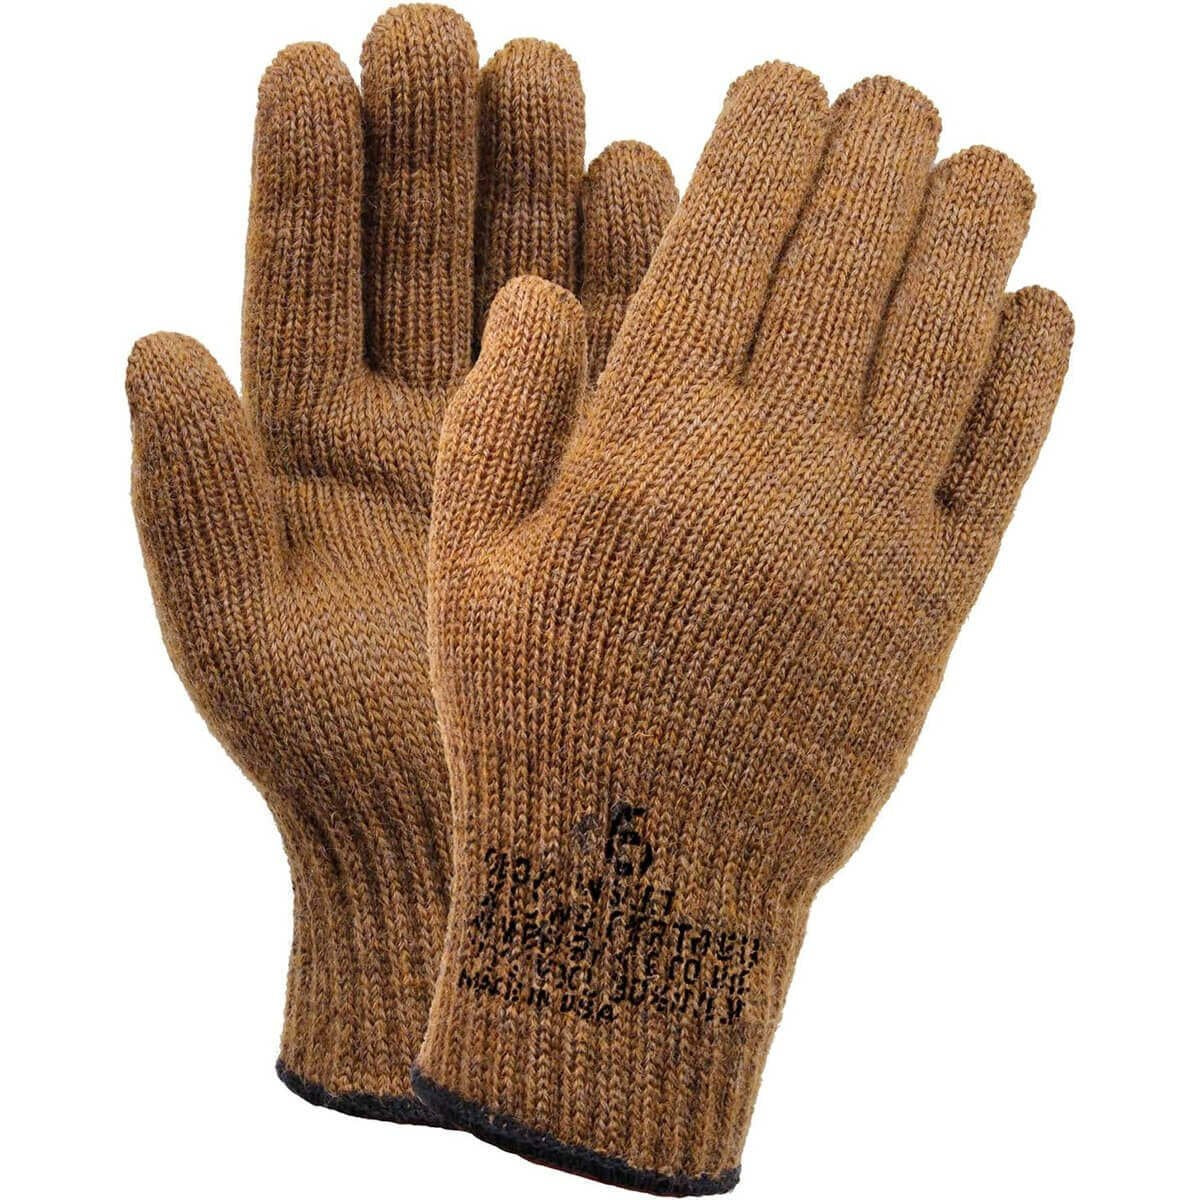 Rothco GI Wool Glove Liners